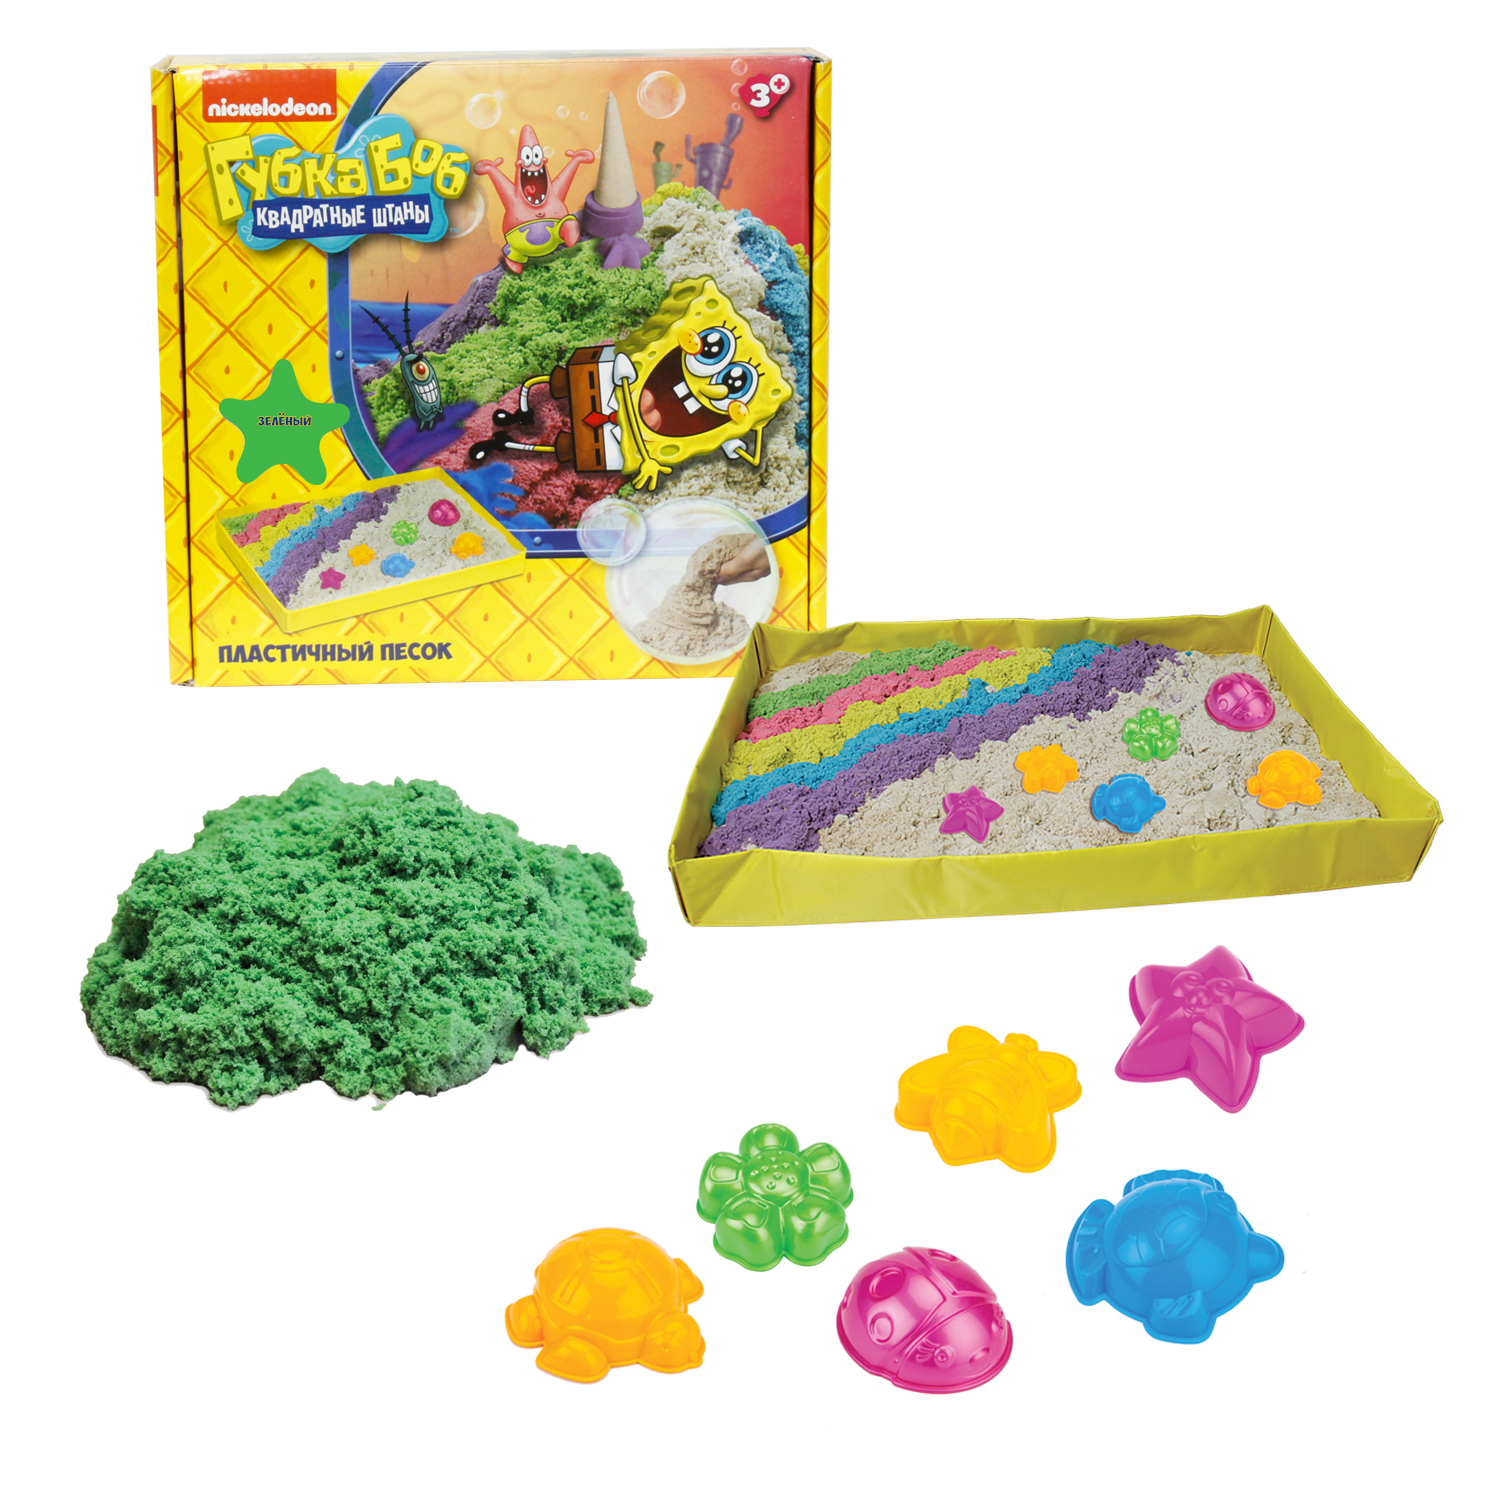 Набор 1 Toy "Губка Боб" зеленый, песочница и формочки, 1 кг